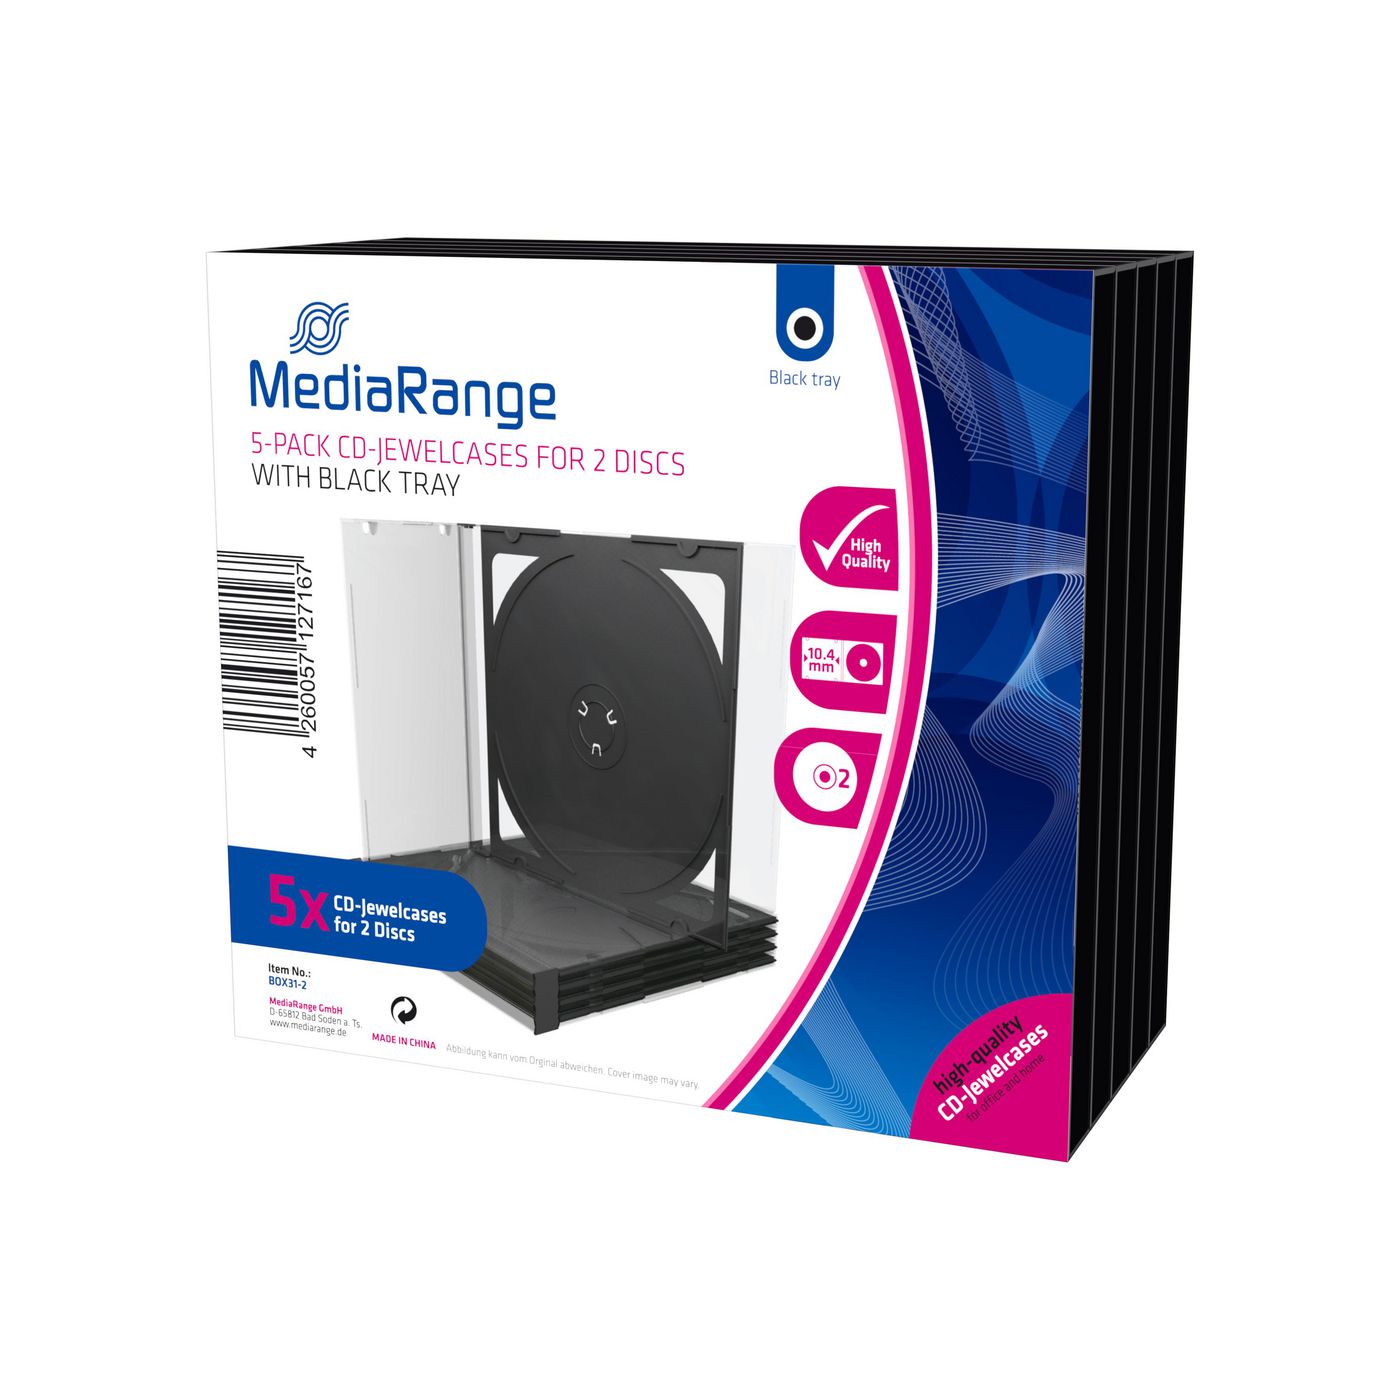 MediaRange BOX31-2 CDDVD Storage Media Case 